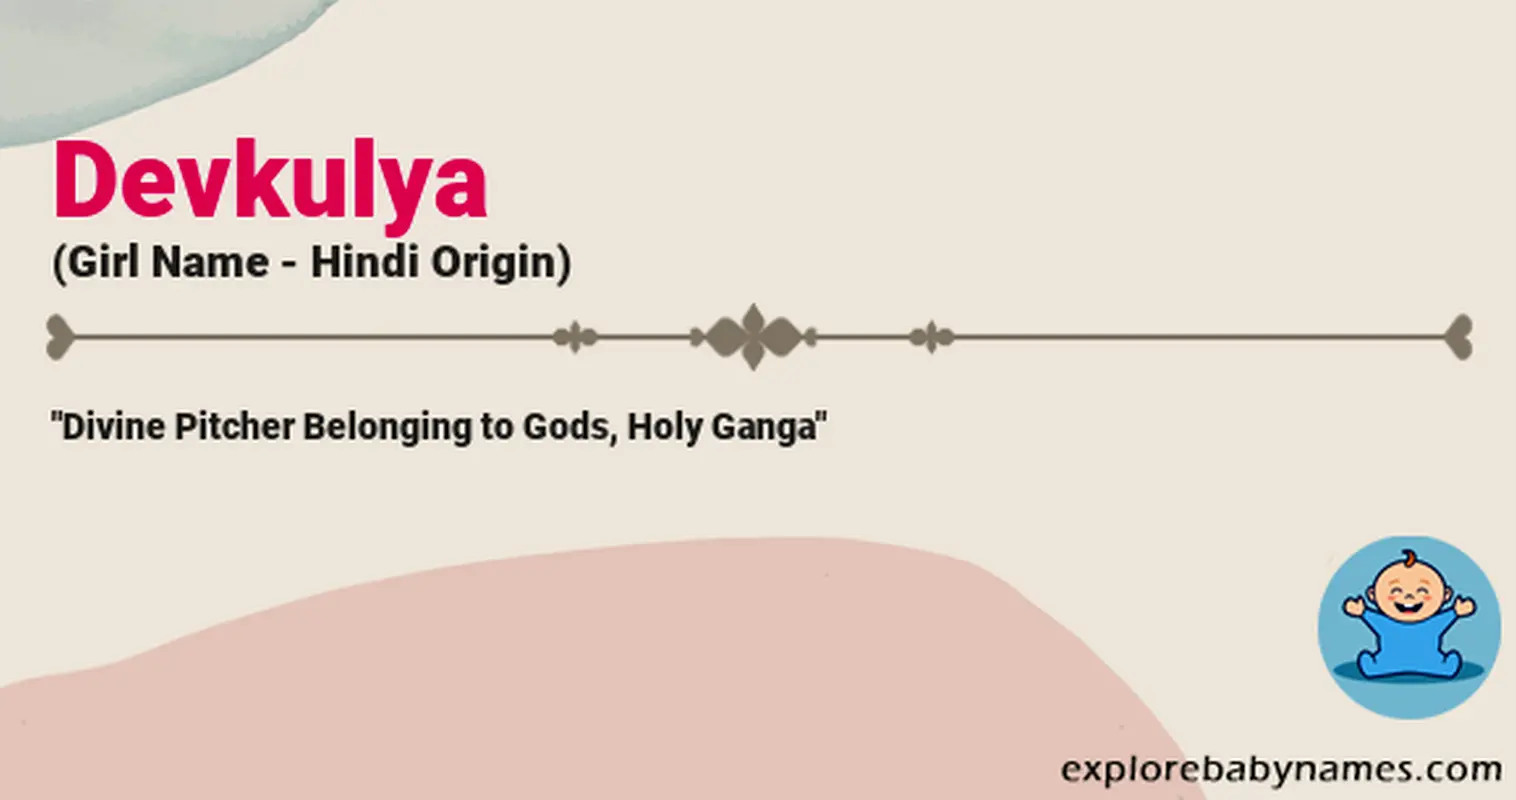 Meaning of Devkulya